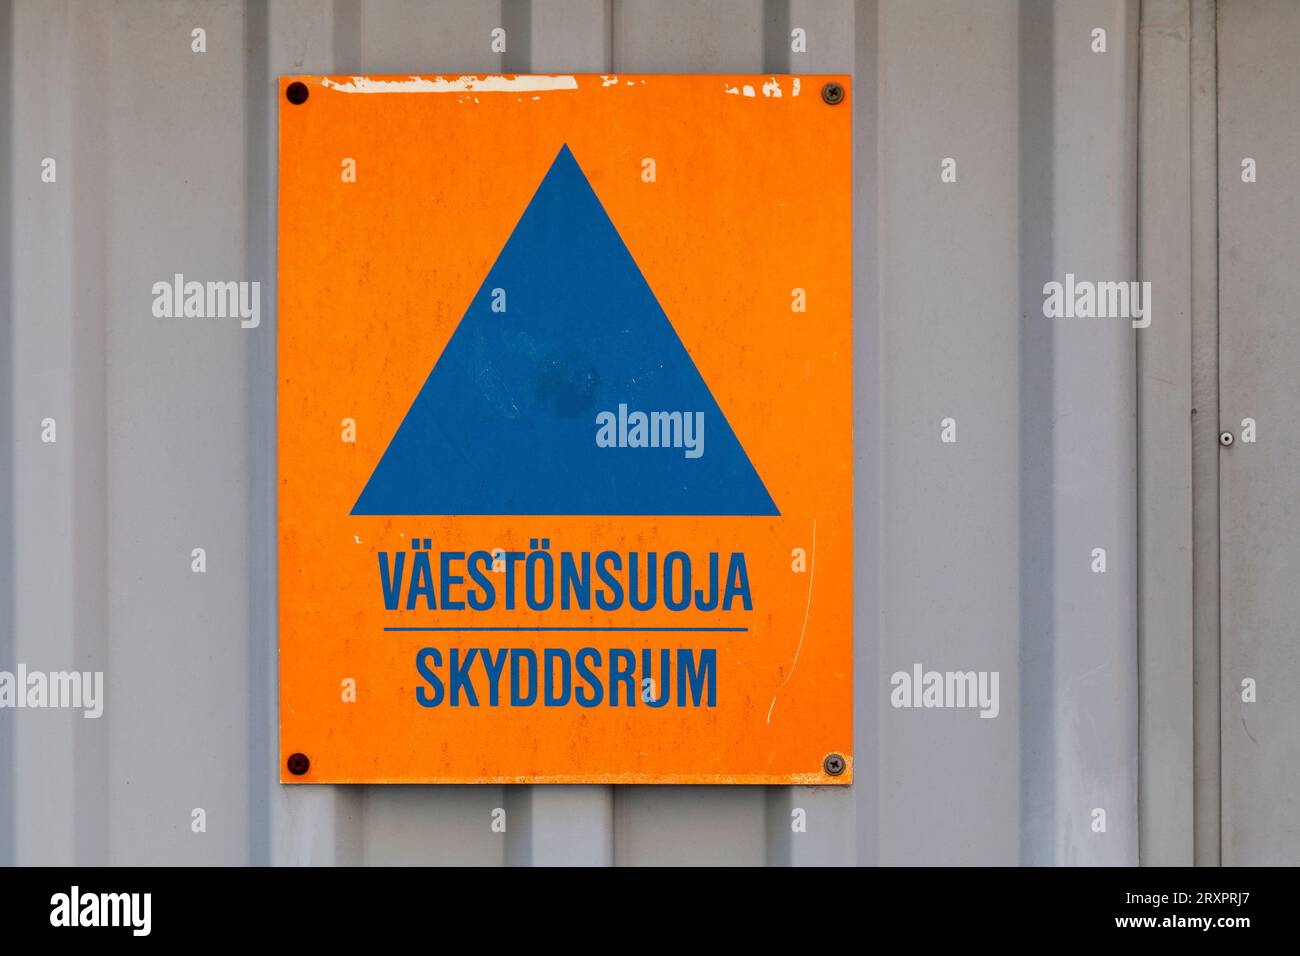 Triangle bleu dessiné sur une pancarte orange avec écrit en finnois 'Väestönsuoja skyddsrum', signifiant en anglais 'Air-raid Shelter'. Banque D'Images